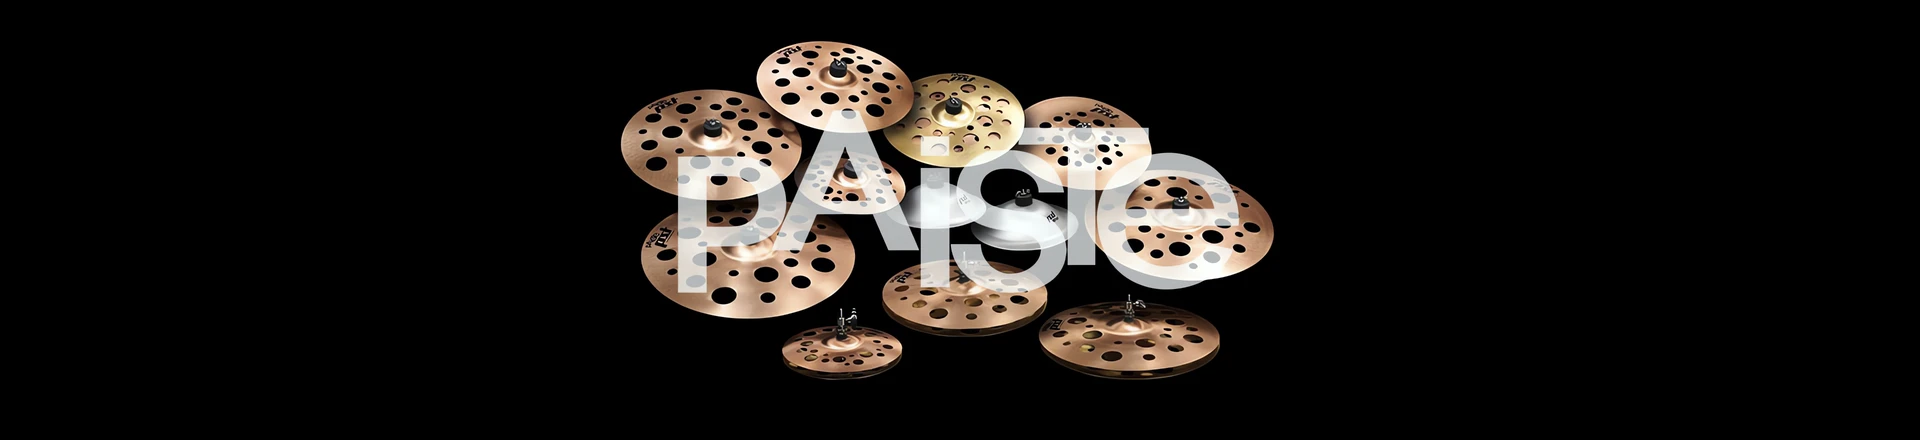 Nowy dodatek do serii, czyli Paiste PSTX DJs 45